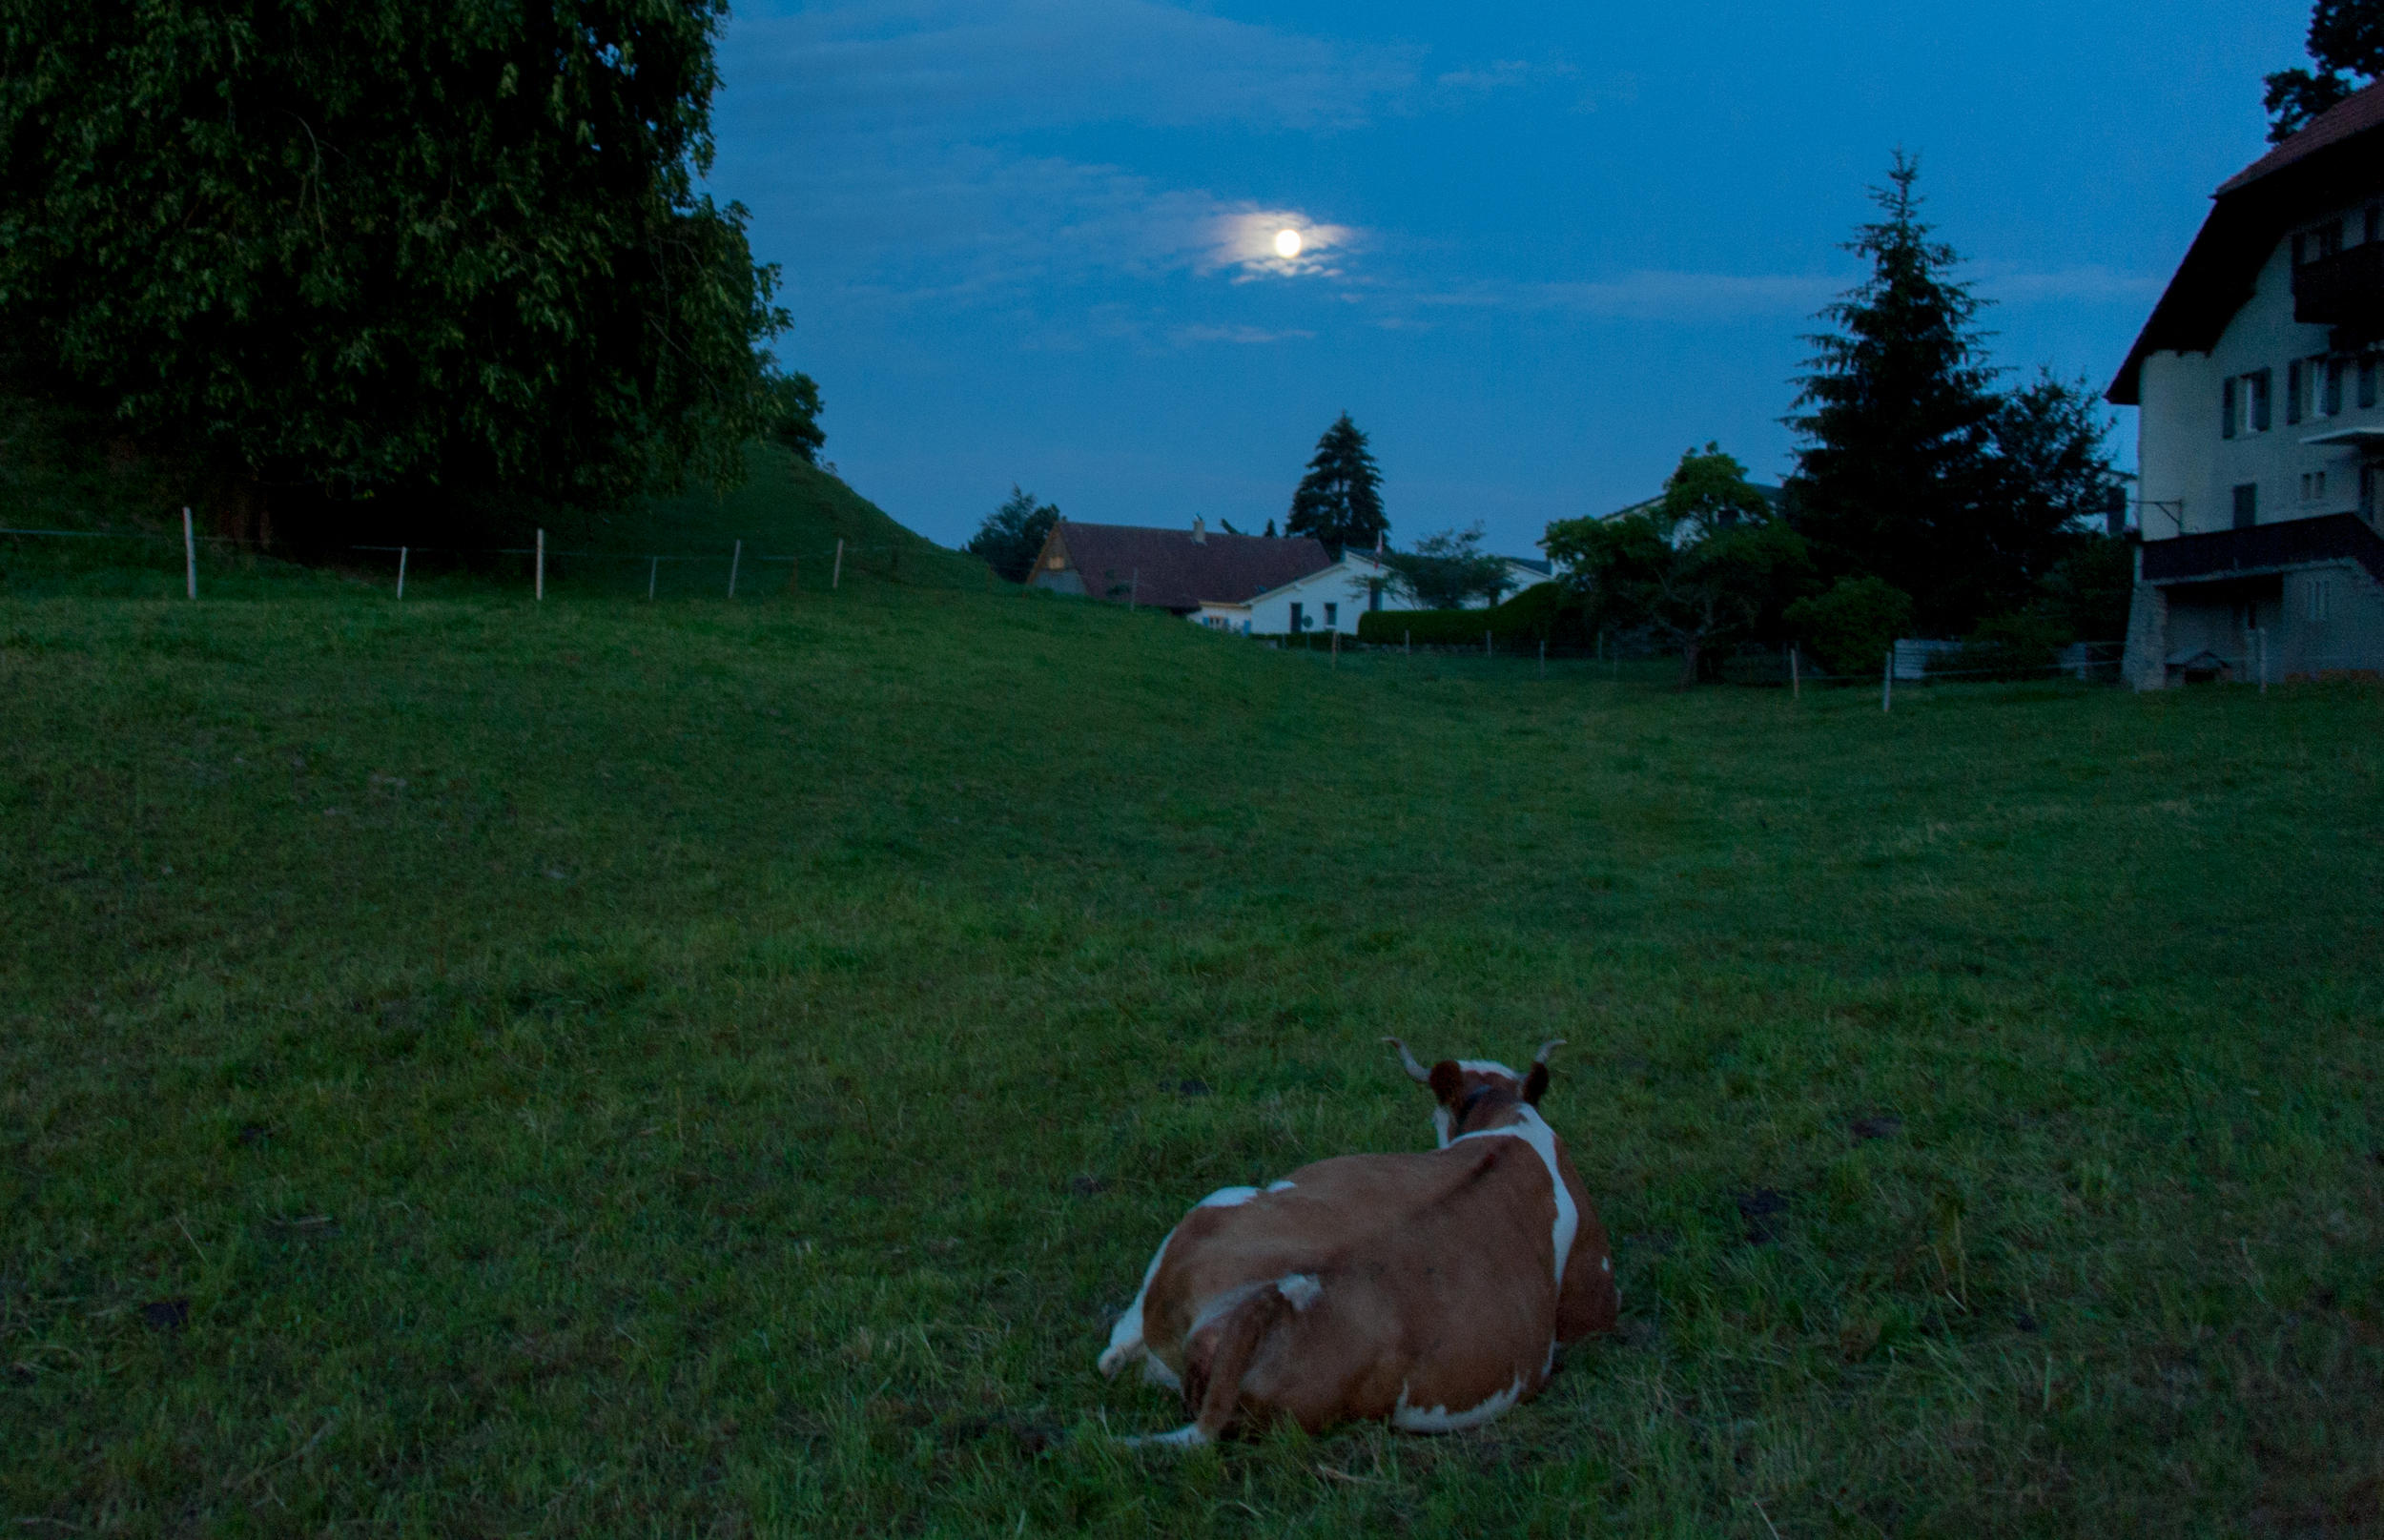 Una vaca en una pradera mientras amanece